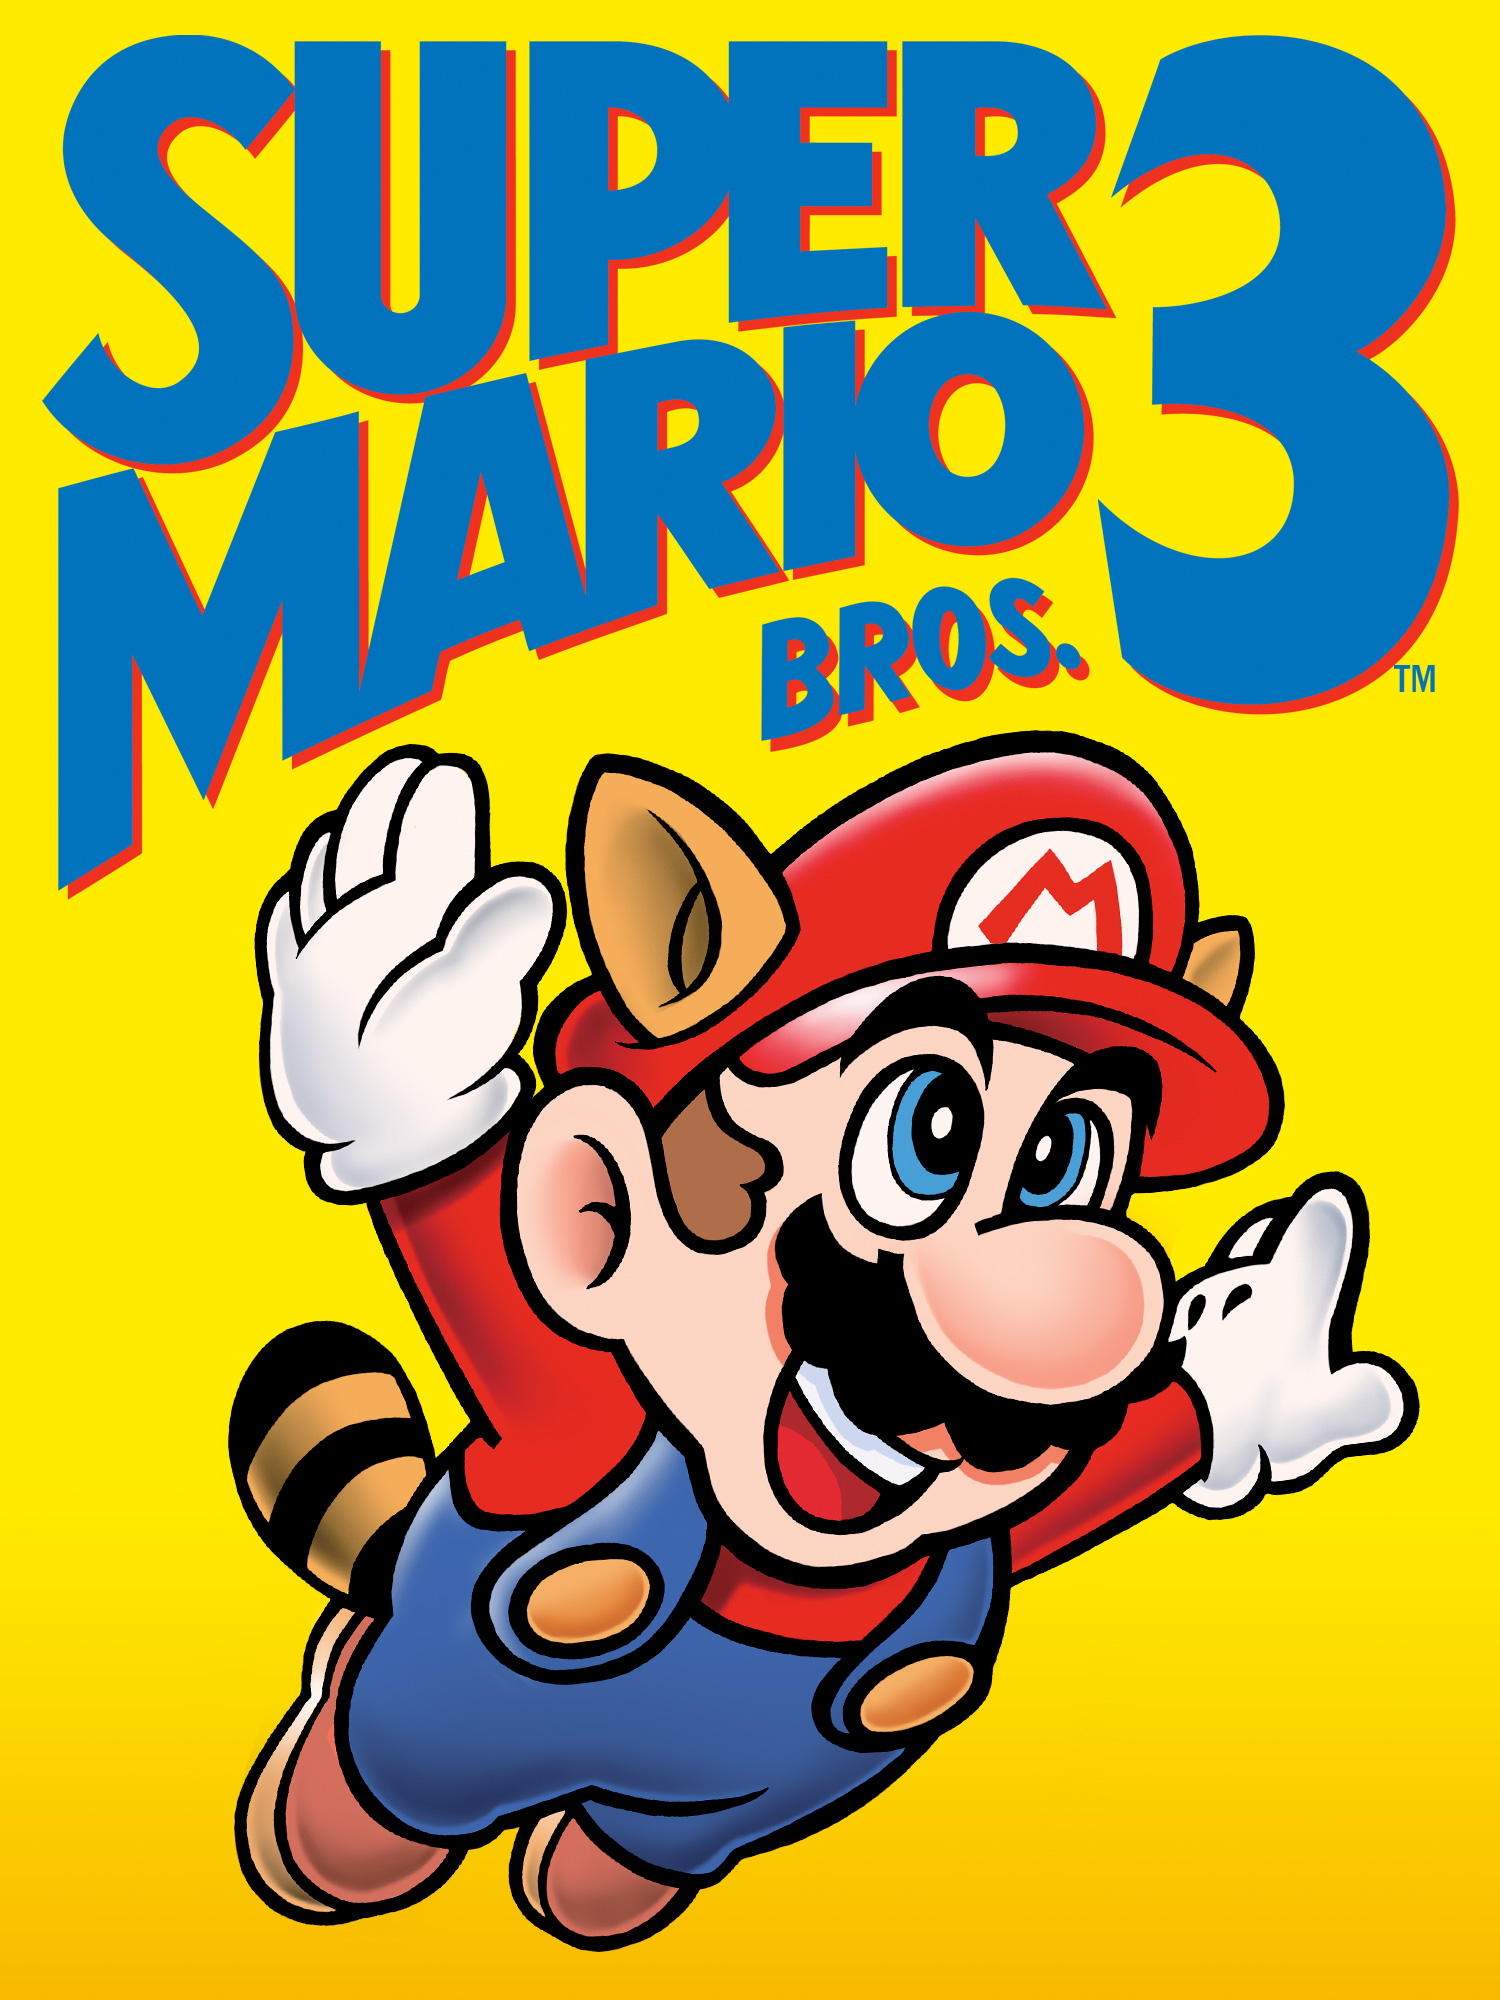 Longplay] NES - Super Mario Bros 3 (HD, 60FPS) 